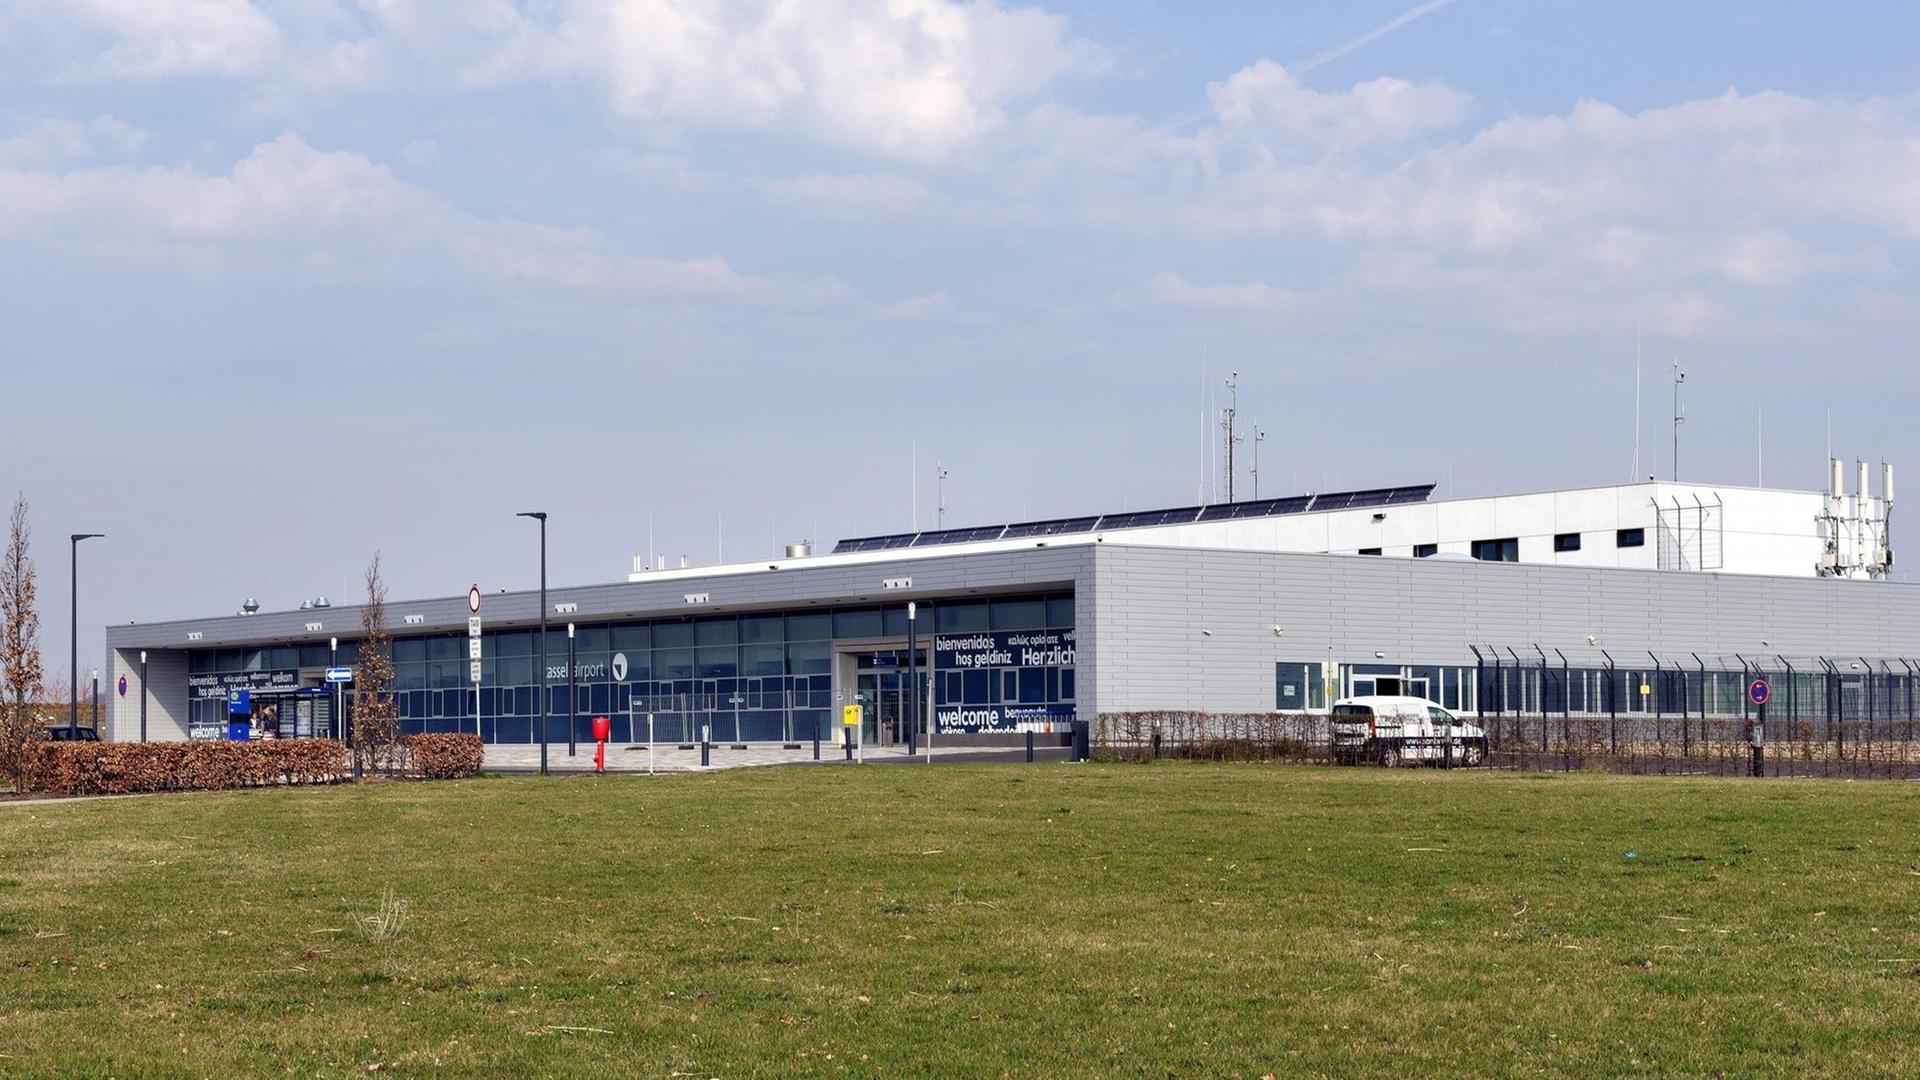 Empfangsgebäude und Terminal des Flughafens Kassel-Calden in Hessen: Es ist keinerlei Betrieb zu sehen.